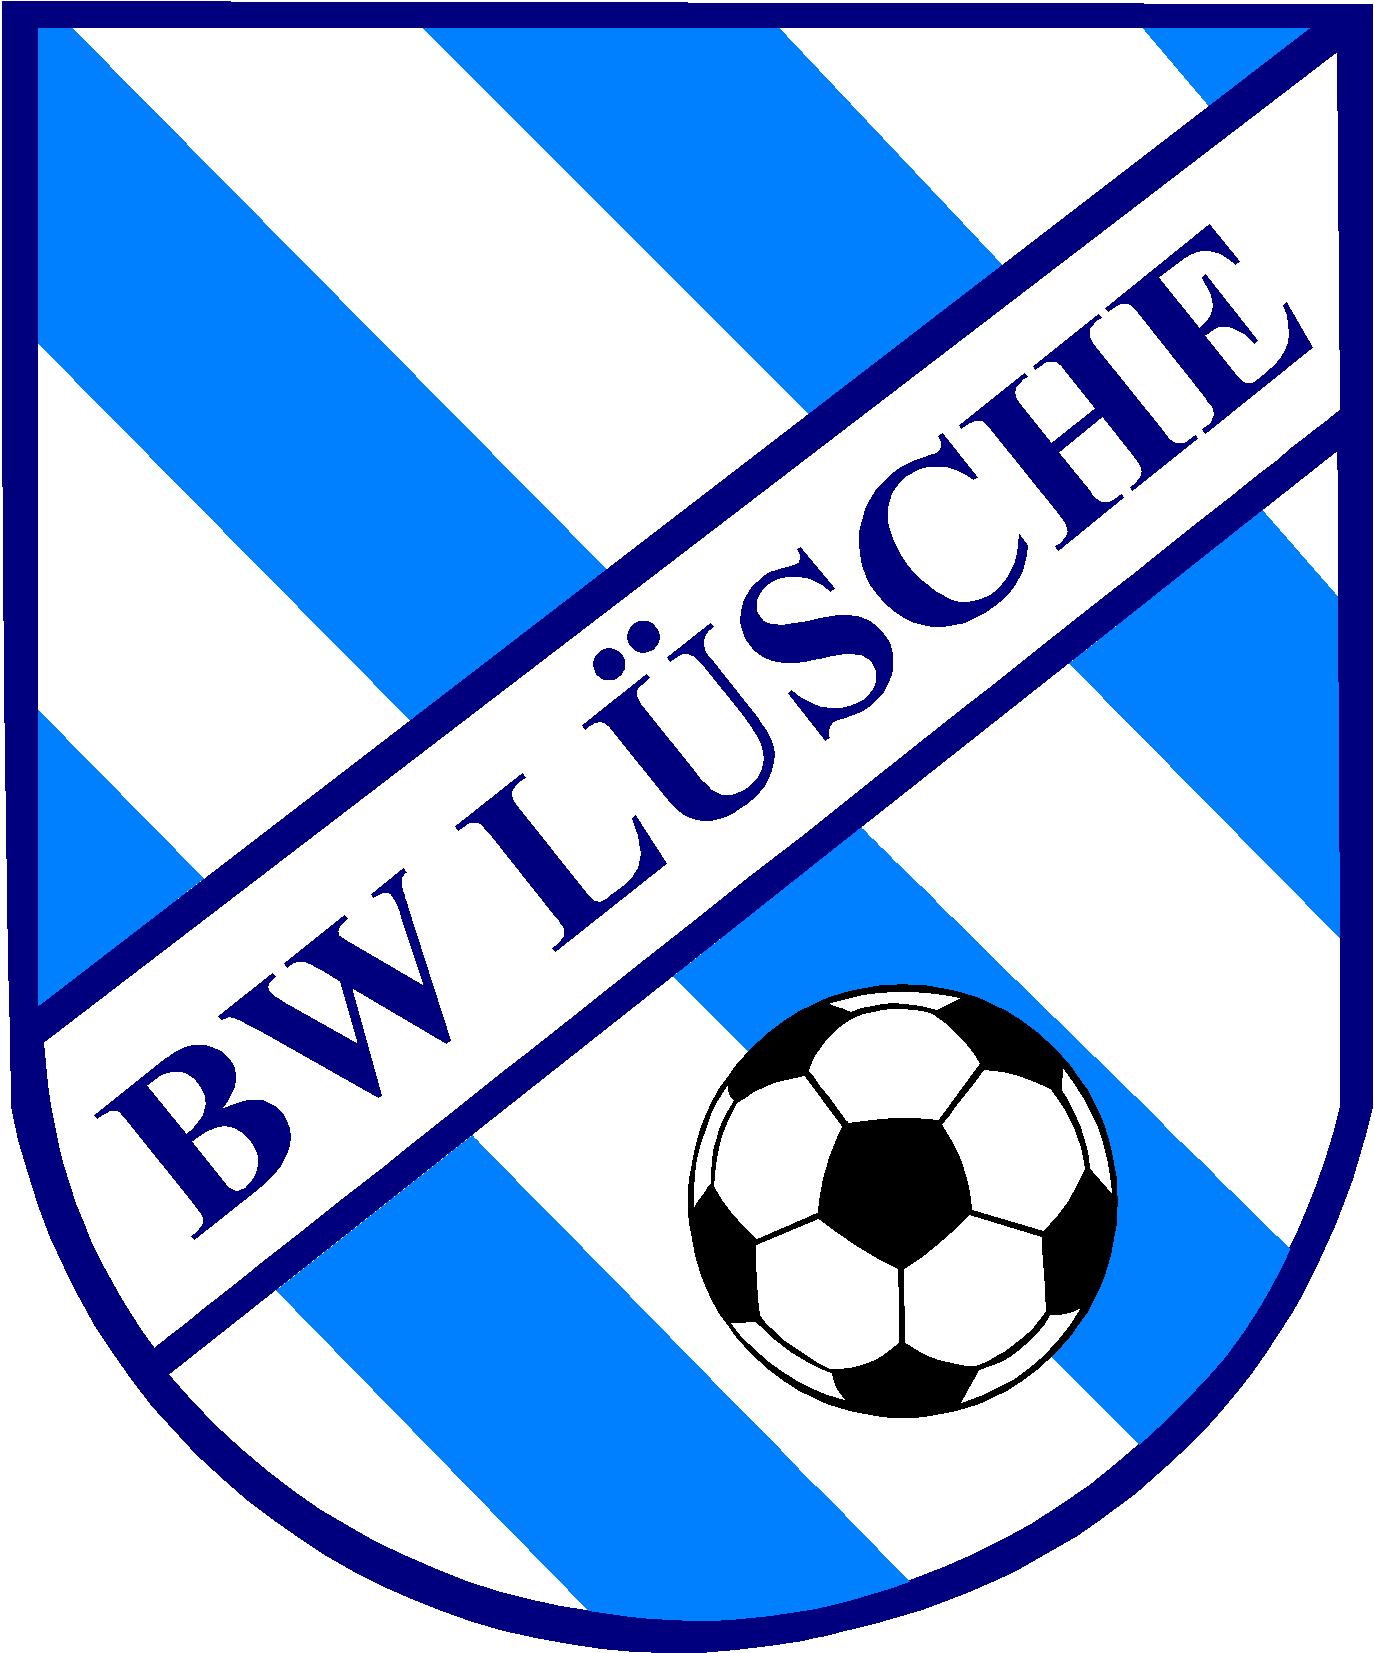 SV Blau-Weiß Lüsche e.V.